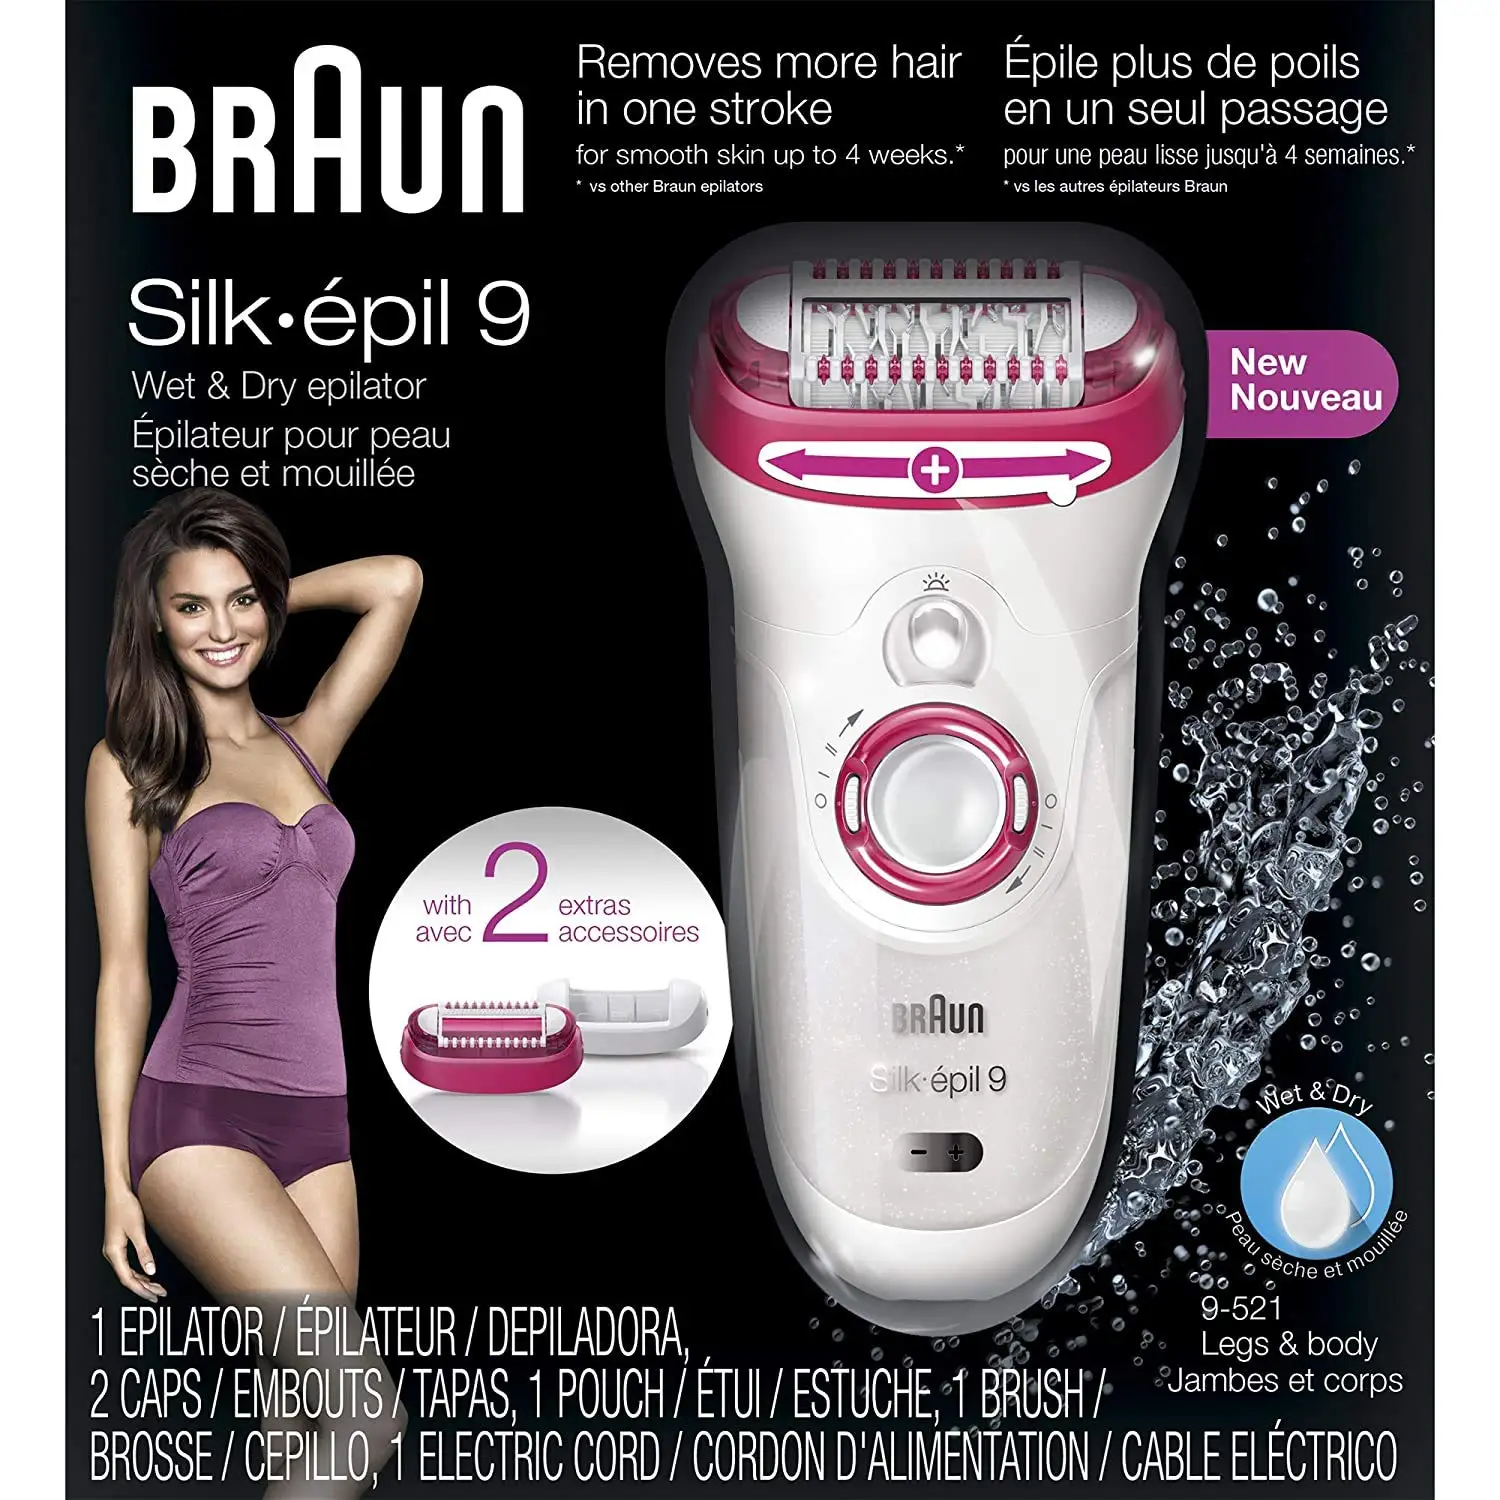 Braun epilator silk-epil 9 9-521, hair removal for women, we